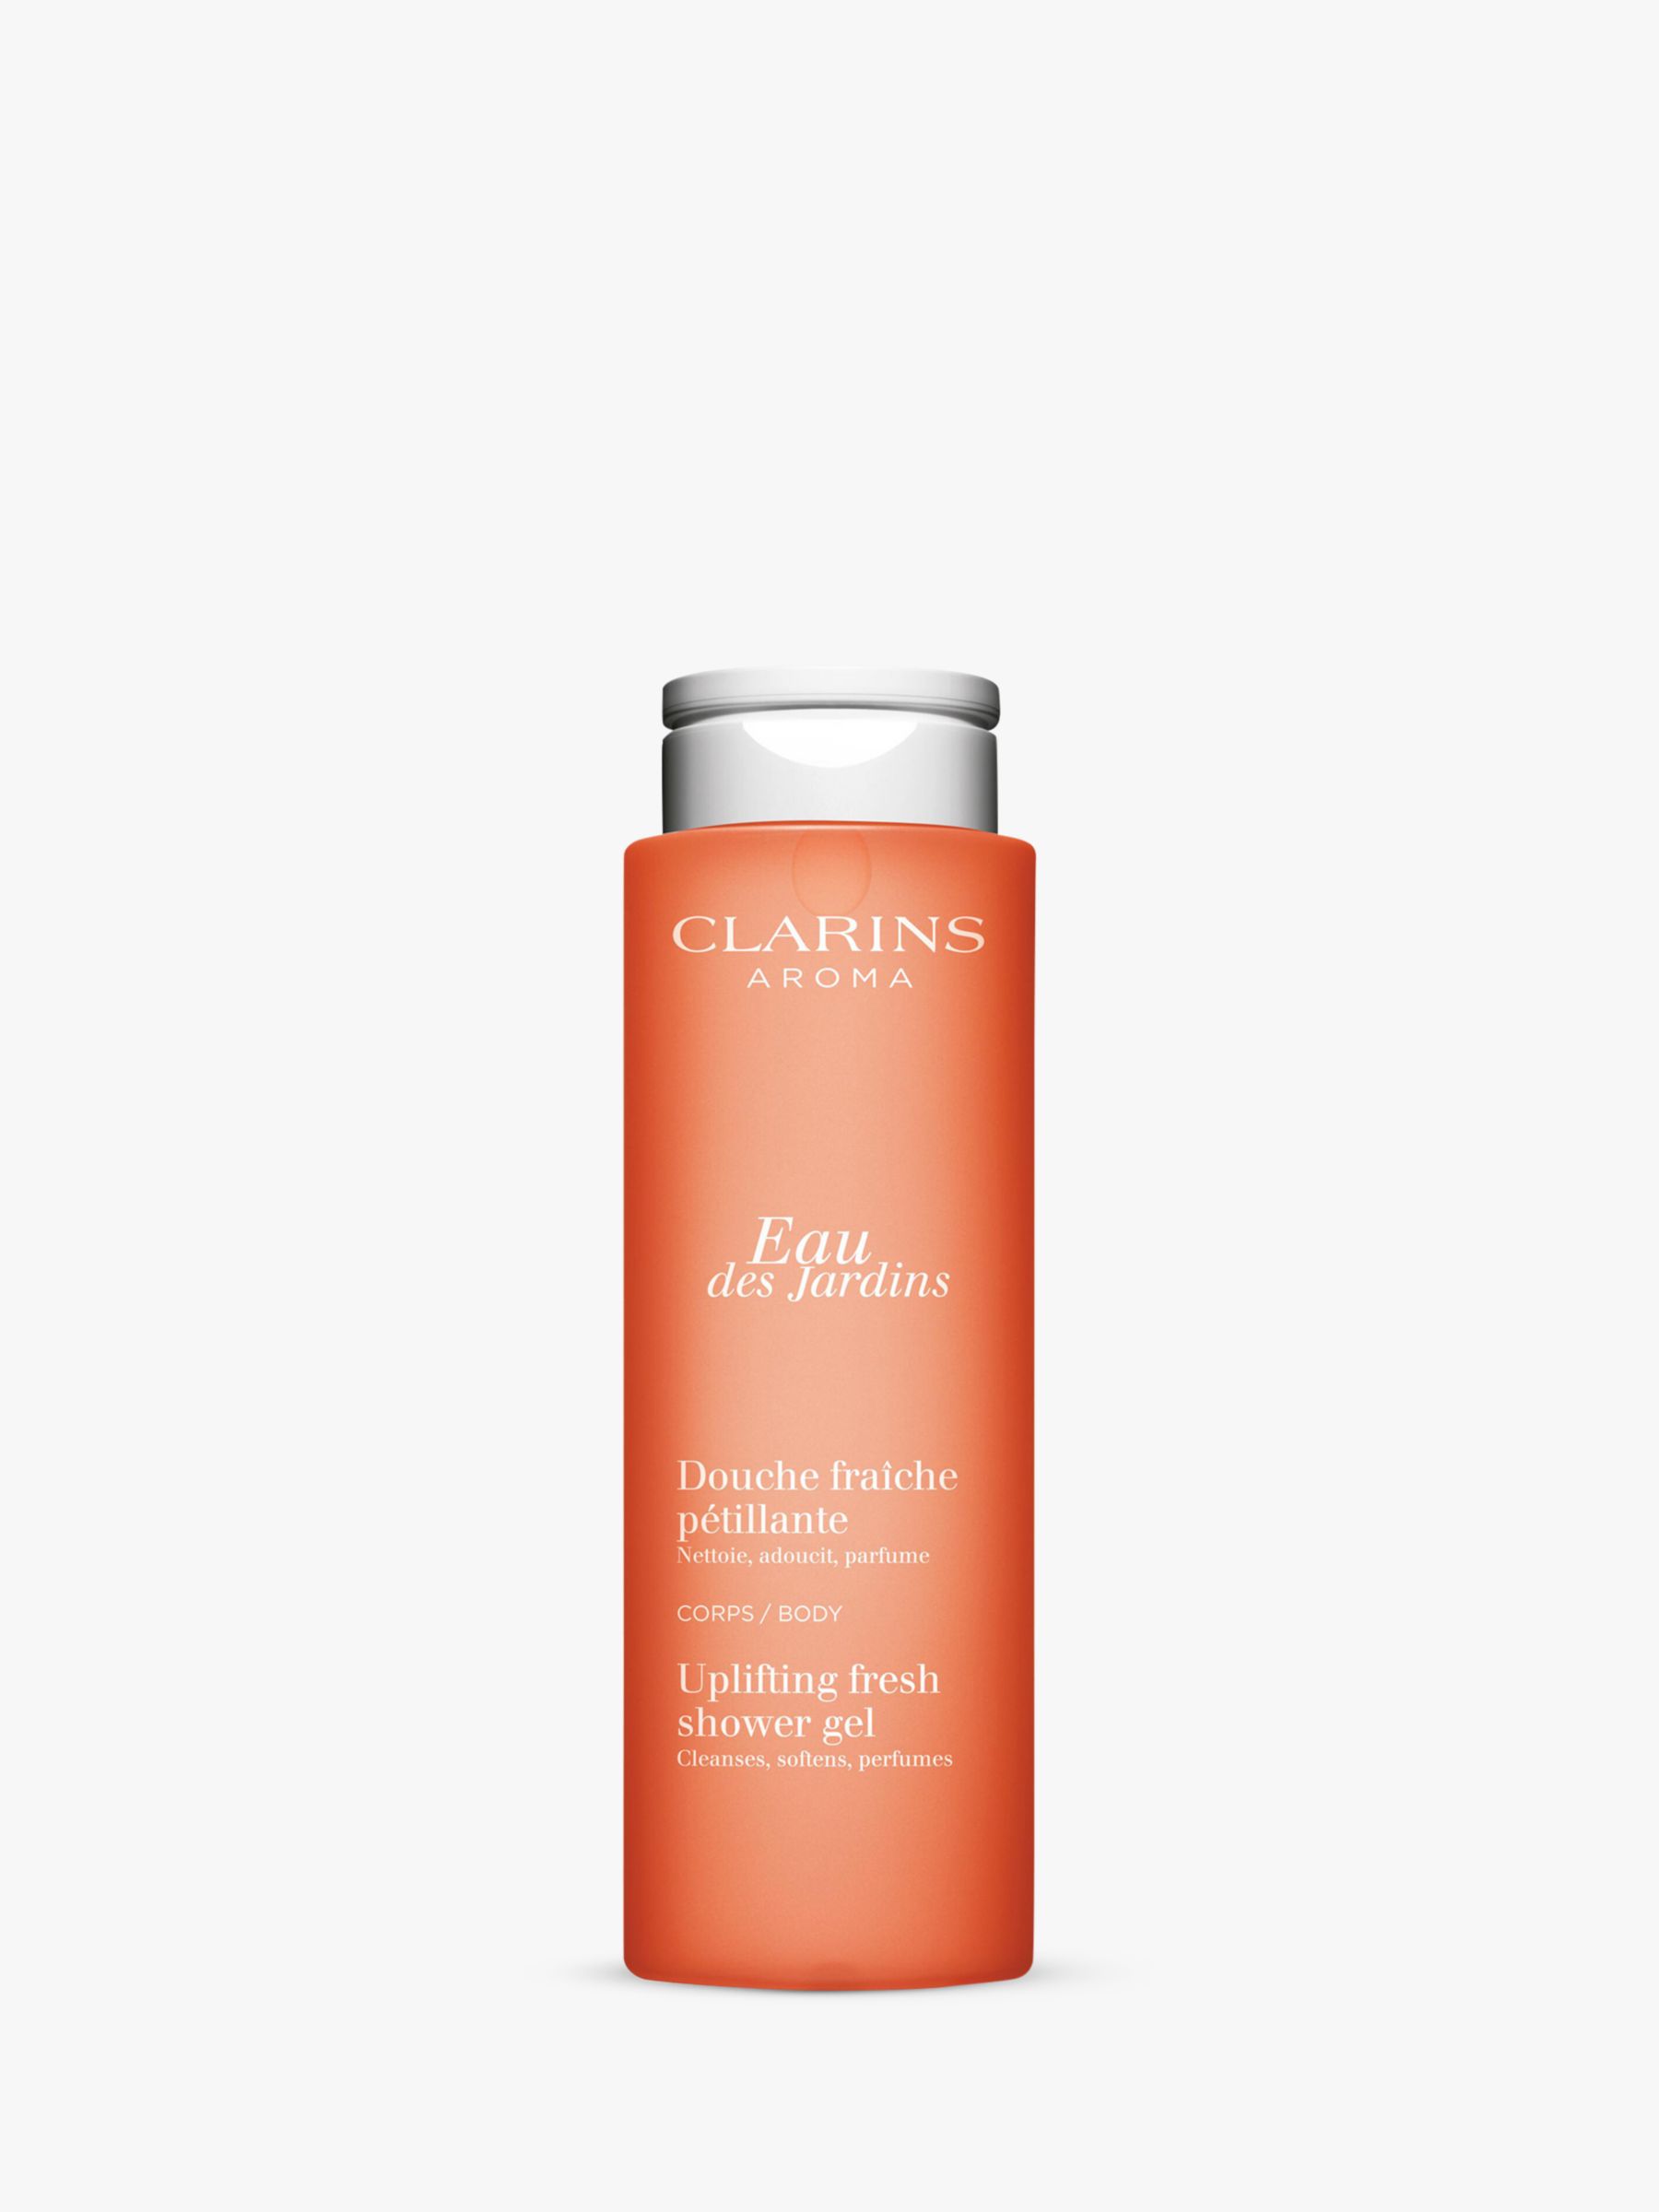 Clarins Eau des Jardins Uplifting Fresh Shower Gel, 200ml 1